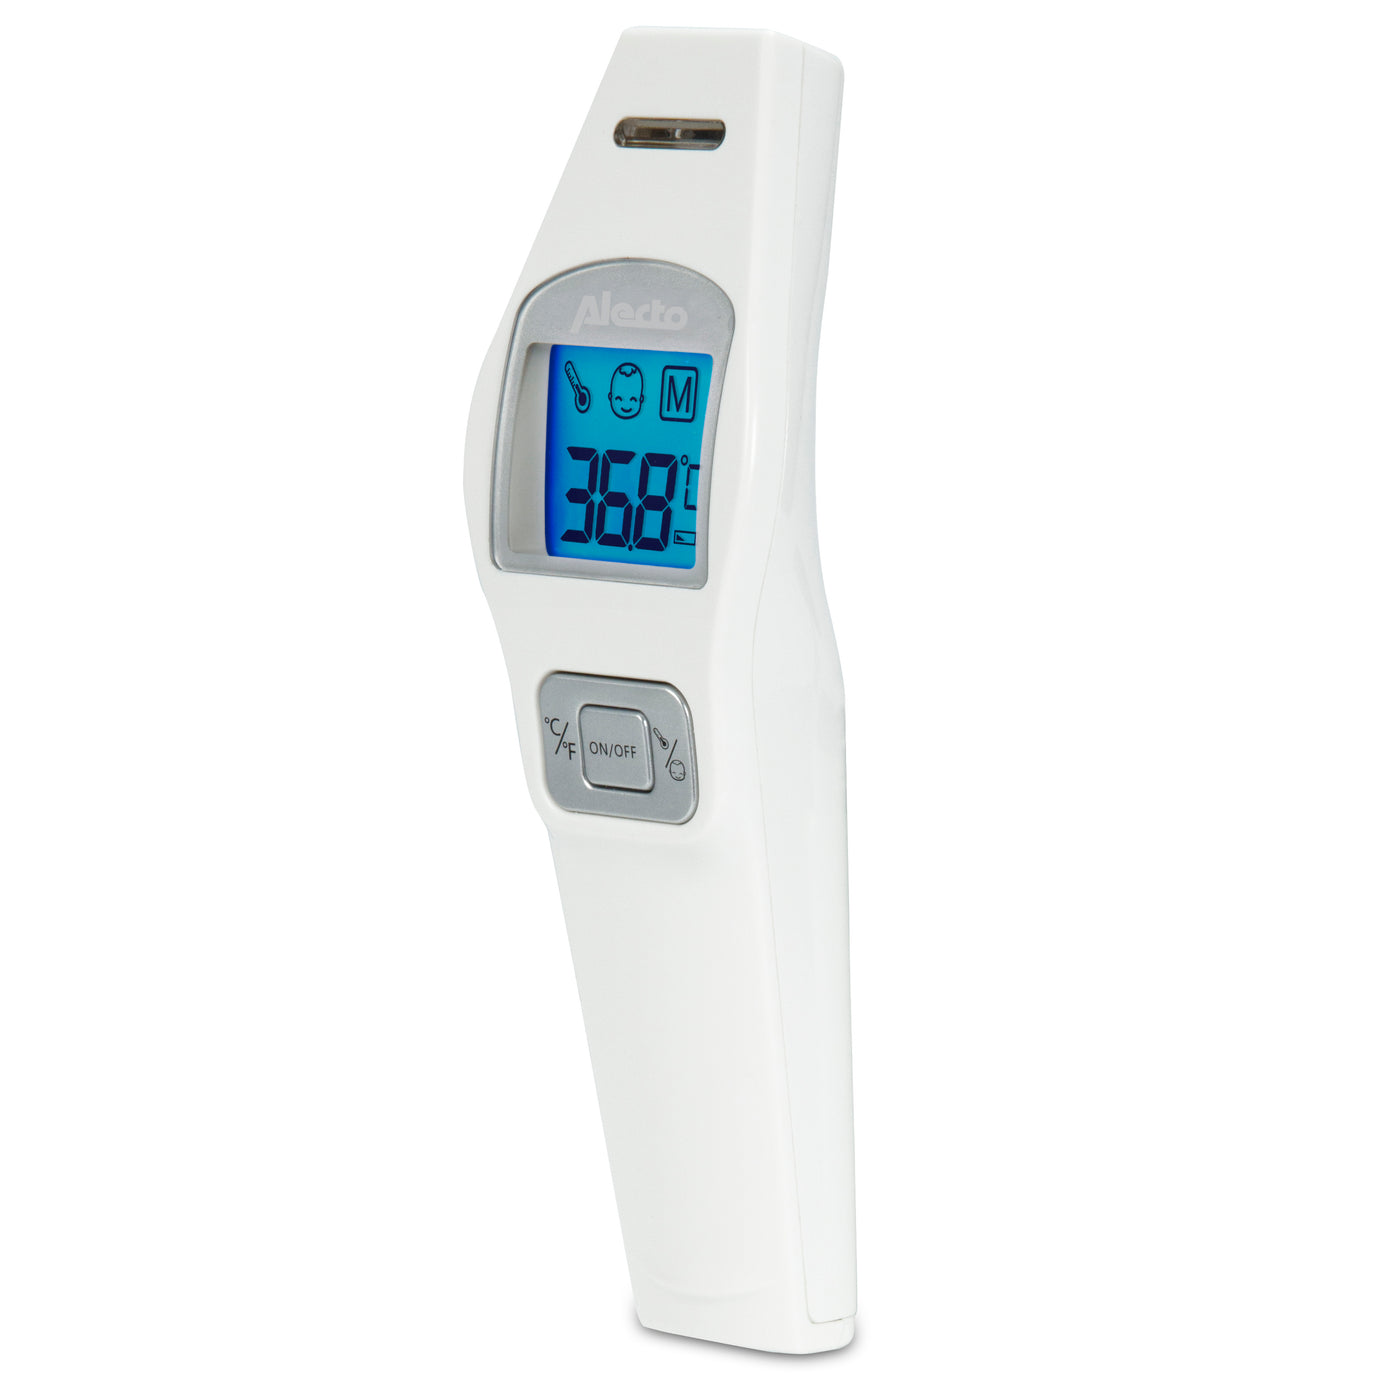 Alecto Baby Thermometer kaufen?   – Alecto Baby DE